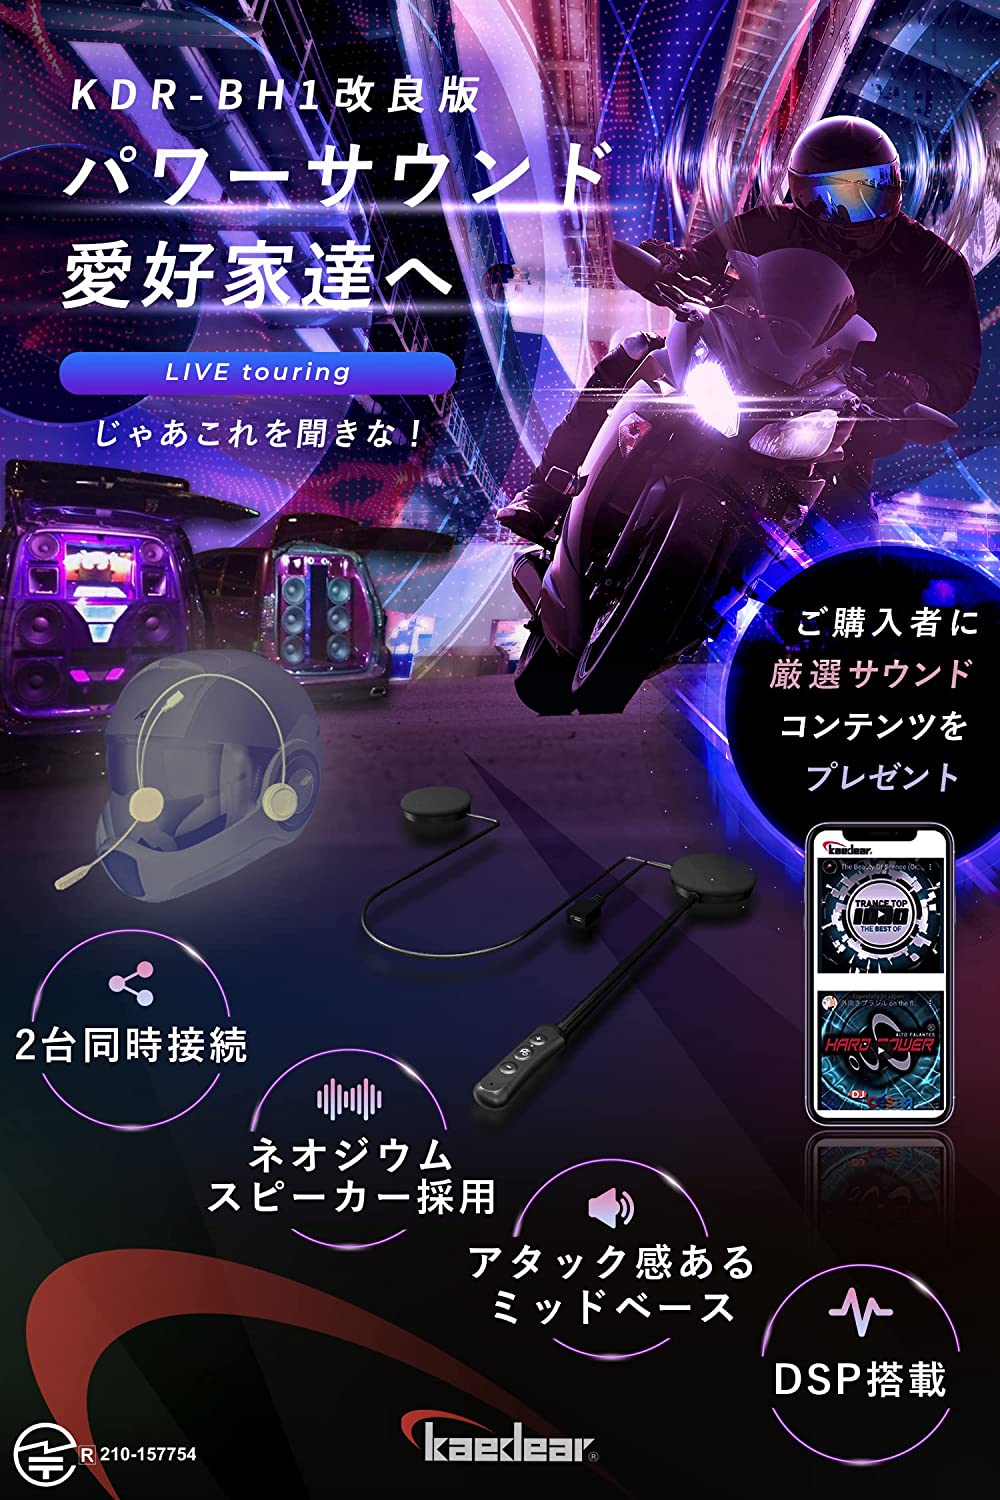  мотоцикл микрофон для наушников in cam Bluetooth шлем динамик Live touring неодим принятие 2 шт. одновременно подключение DSP установка Kaedearka Эдди aKDR-BH1